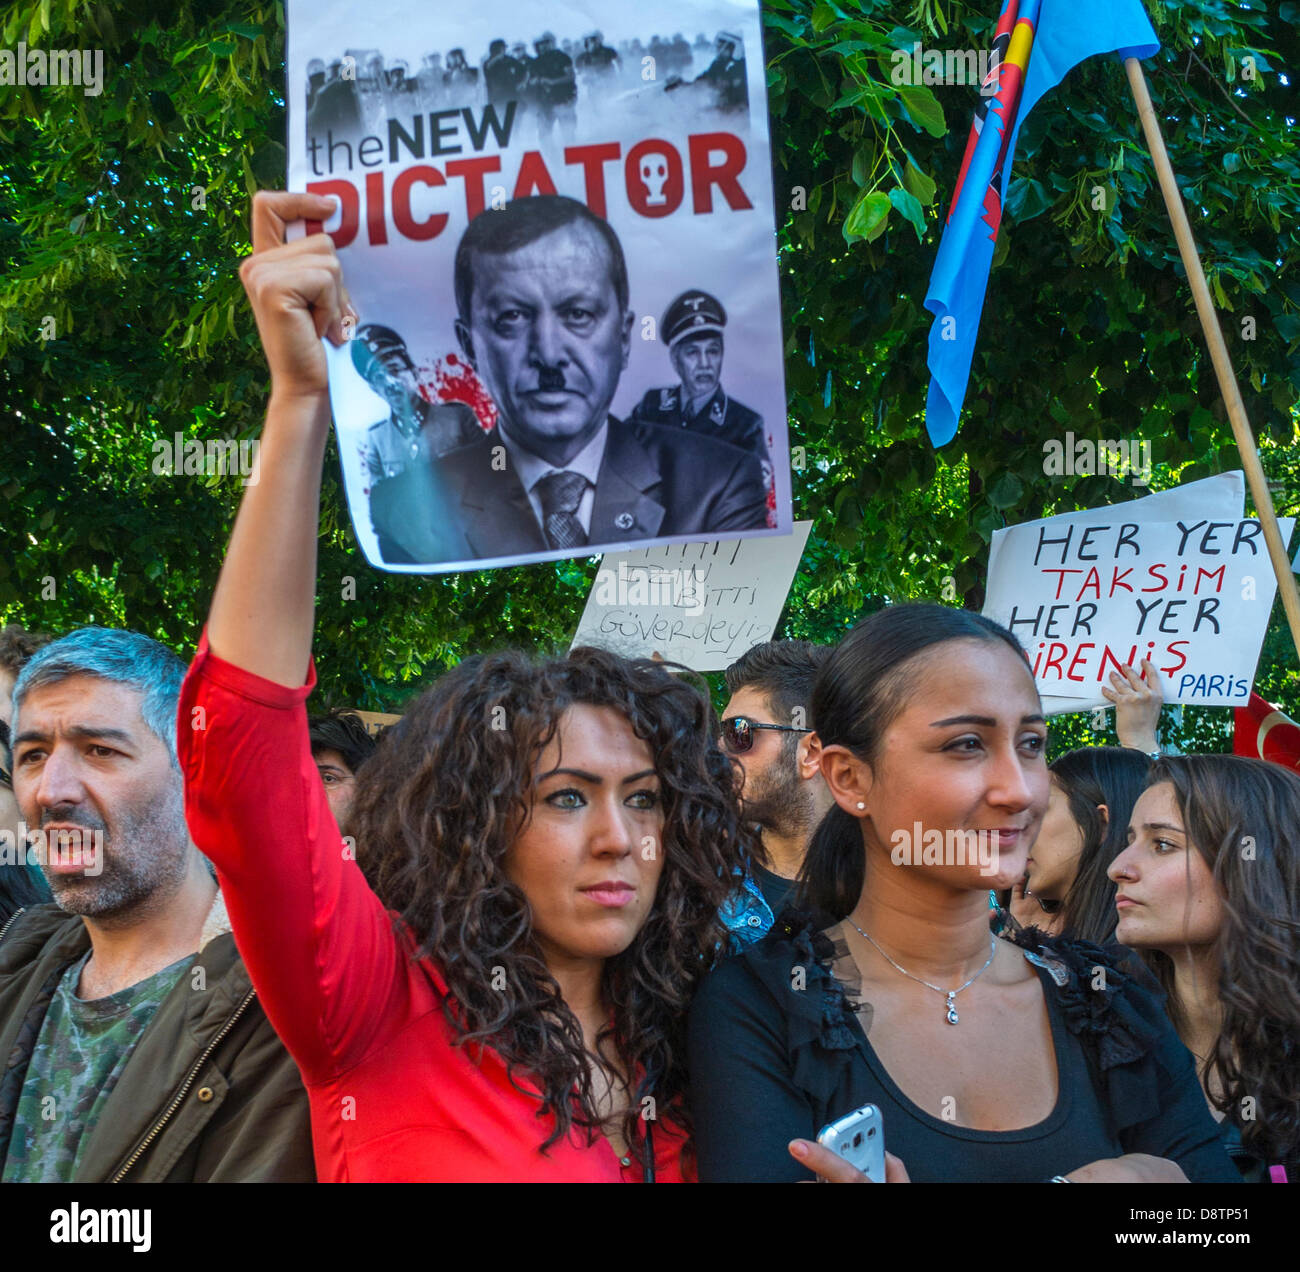 Paris, France. Personnes turques protestant contre la répression du gouvernement turc lors des récentes manifestations antigouvernementales d'an-Kara. Femme tenant manifestation signe 'le nouveau dictateur' protestation des adolescents Banque D'Images